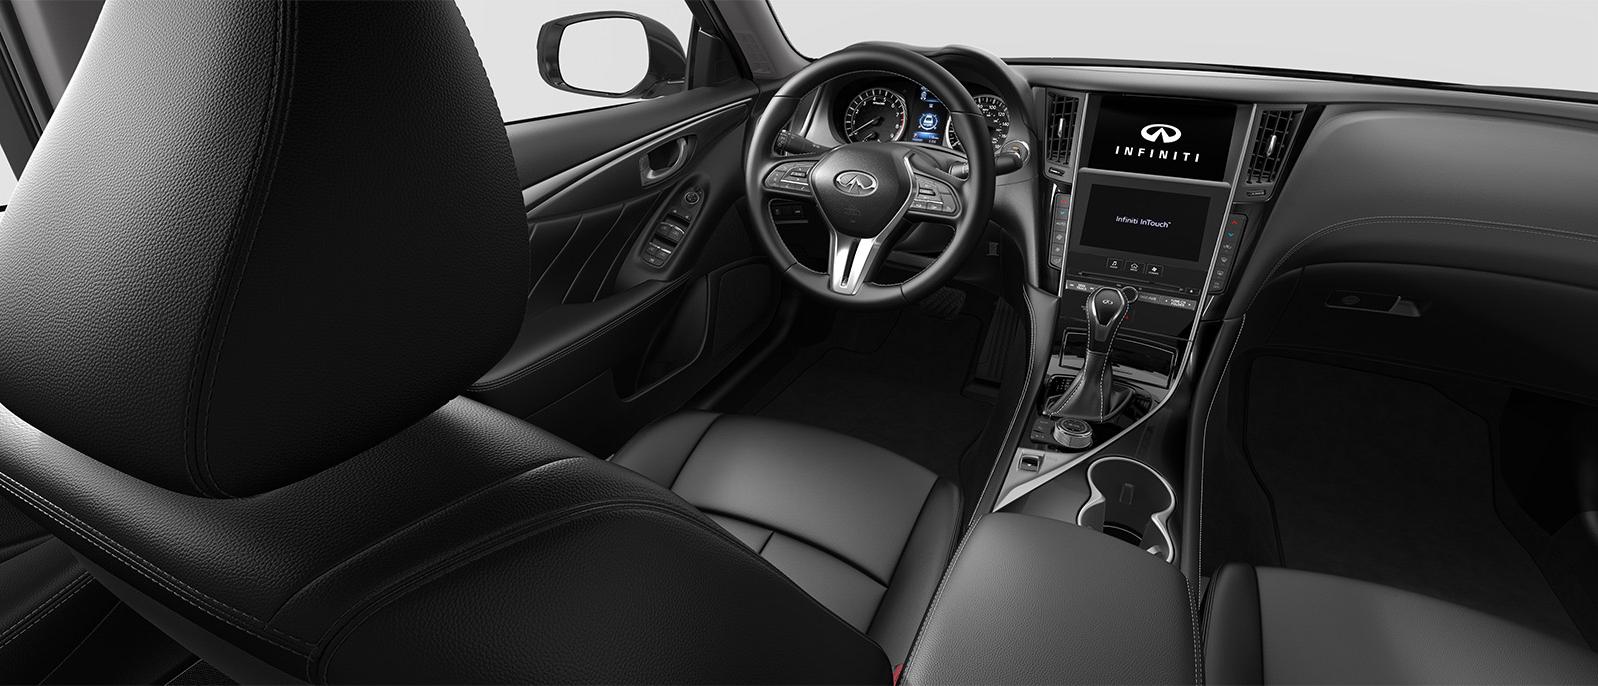 INFINITI Q50 Pure trim interior in Graphite color scheme.